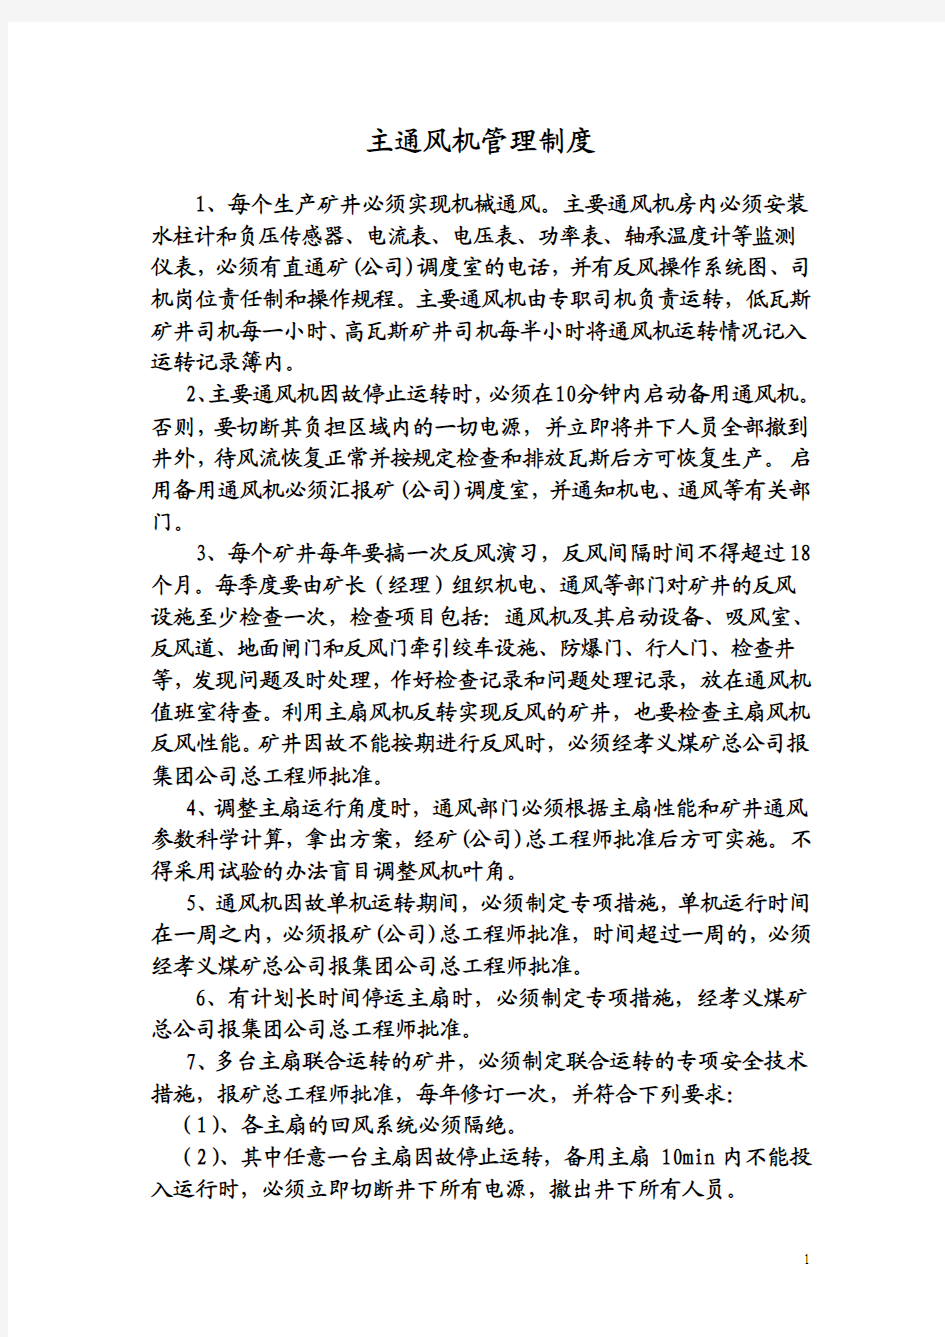 2011年汾西正邦煤业有限公司矿井通风管理制度 Microsoft Word 文档